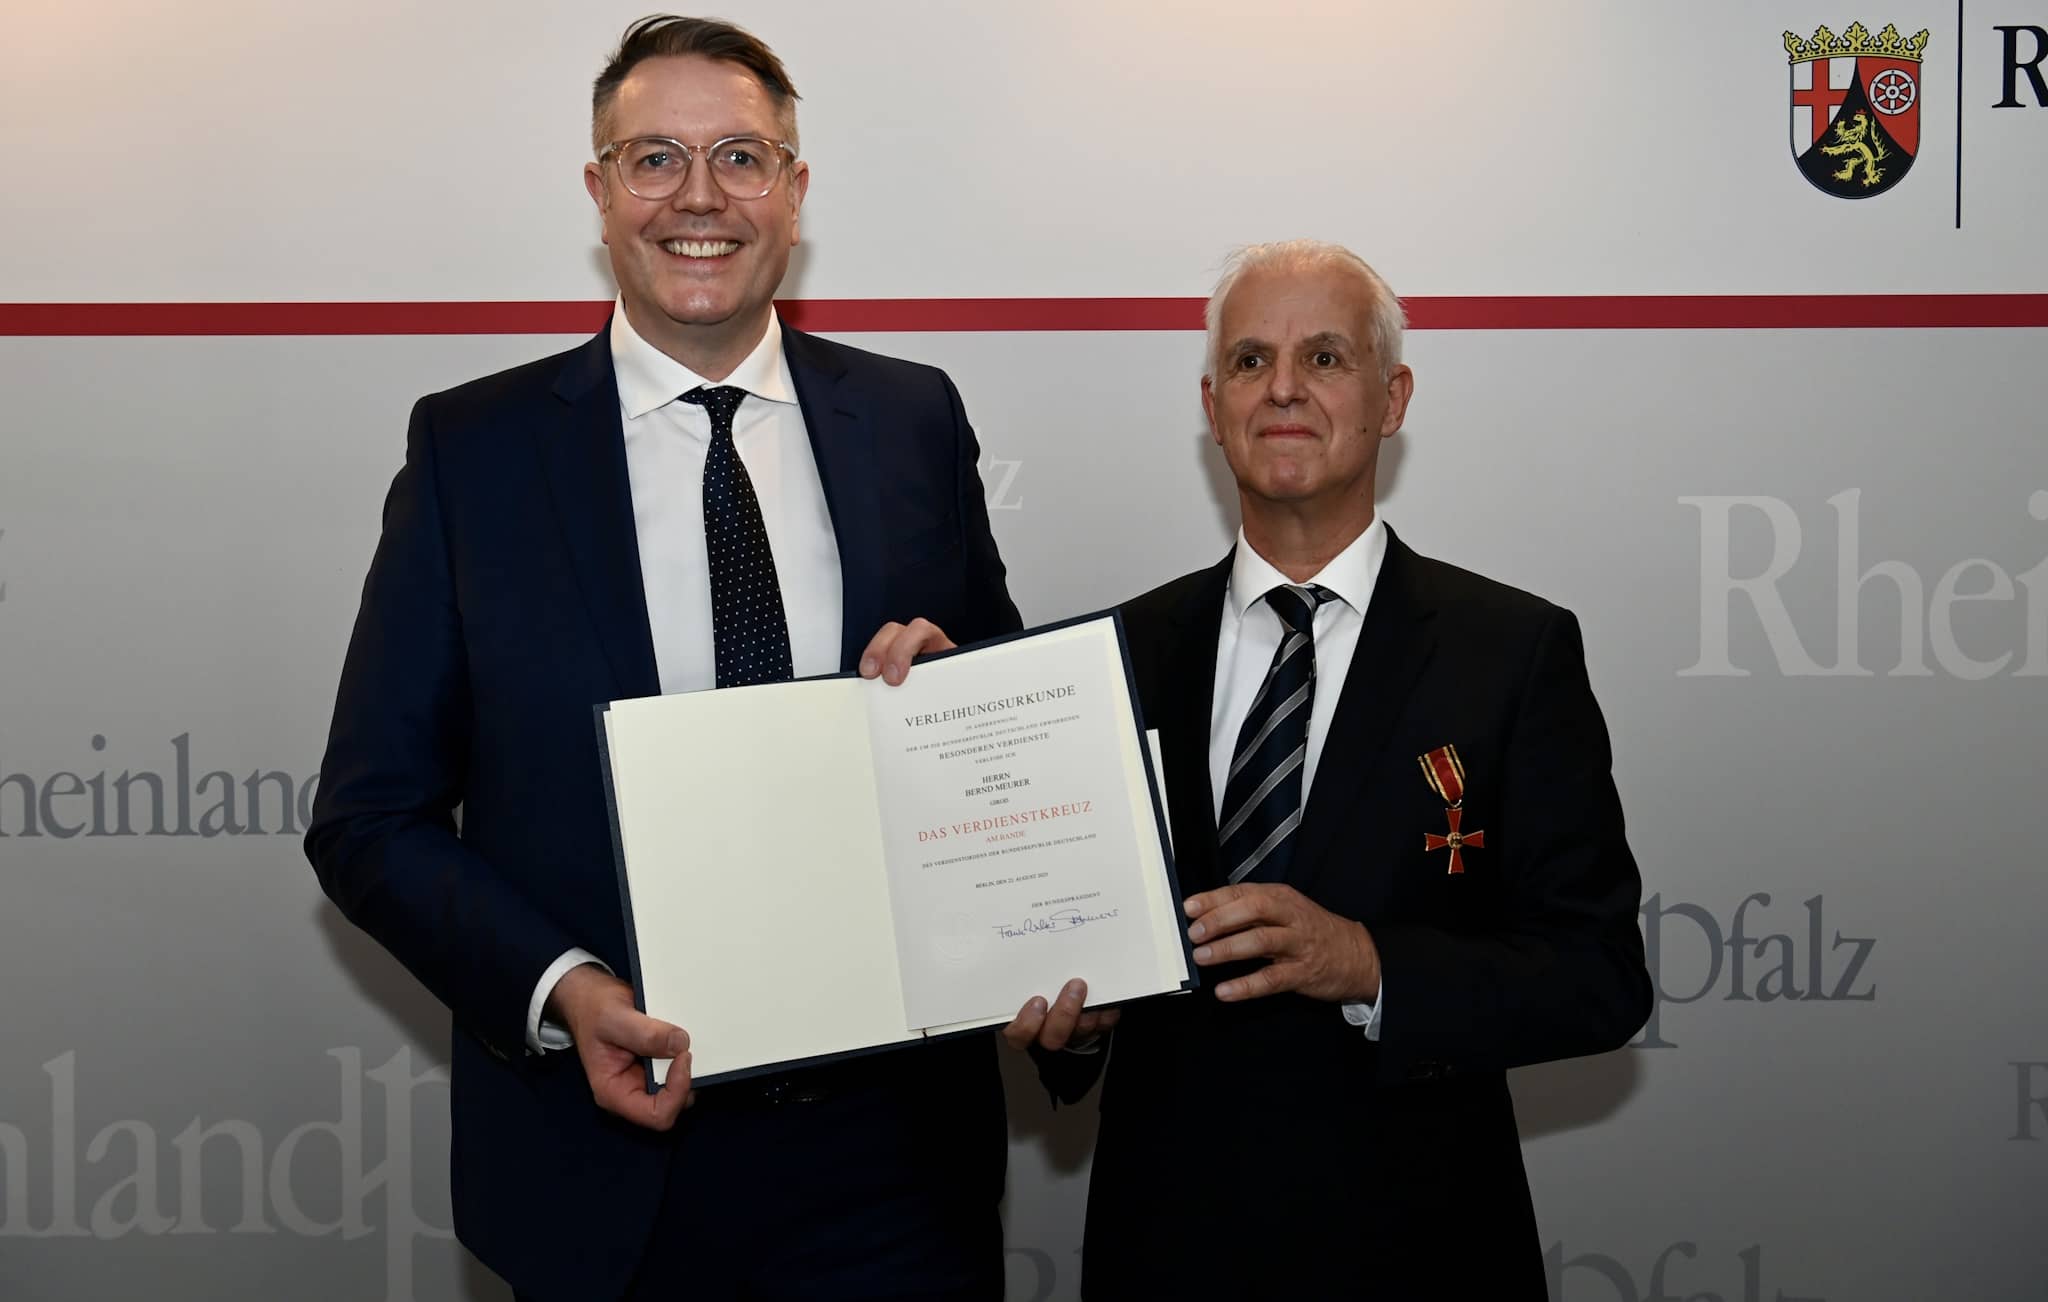 Bernd Meurer awarded the Federal Cross of Merit